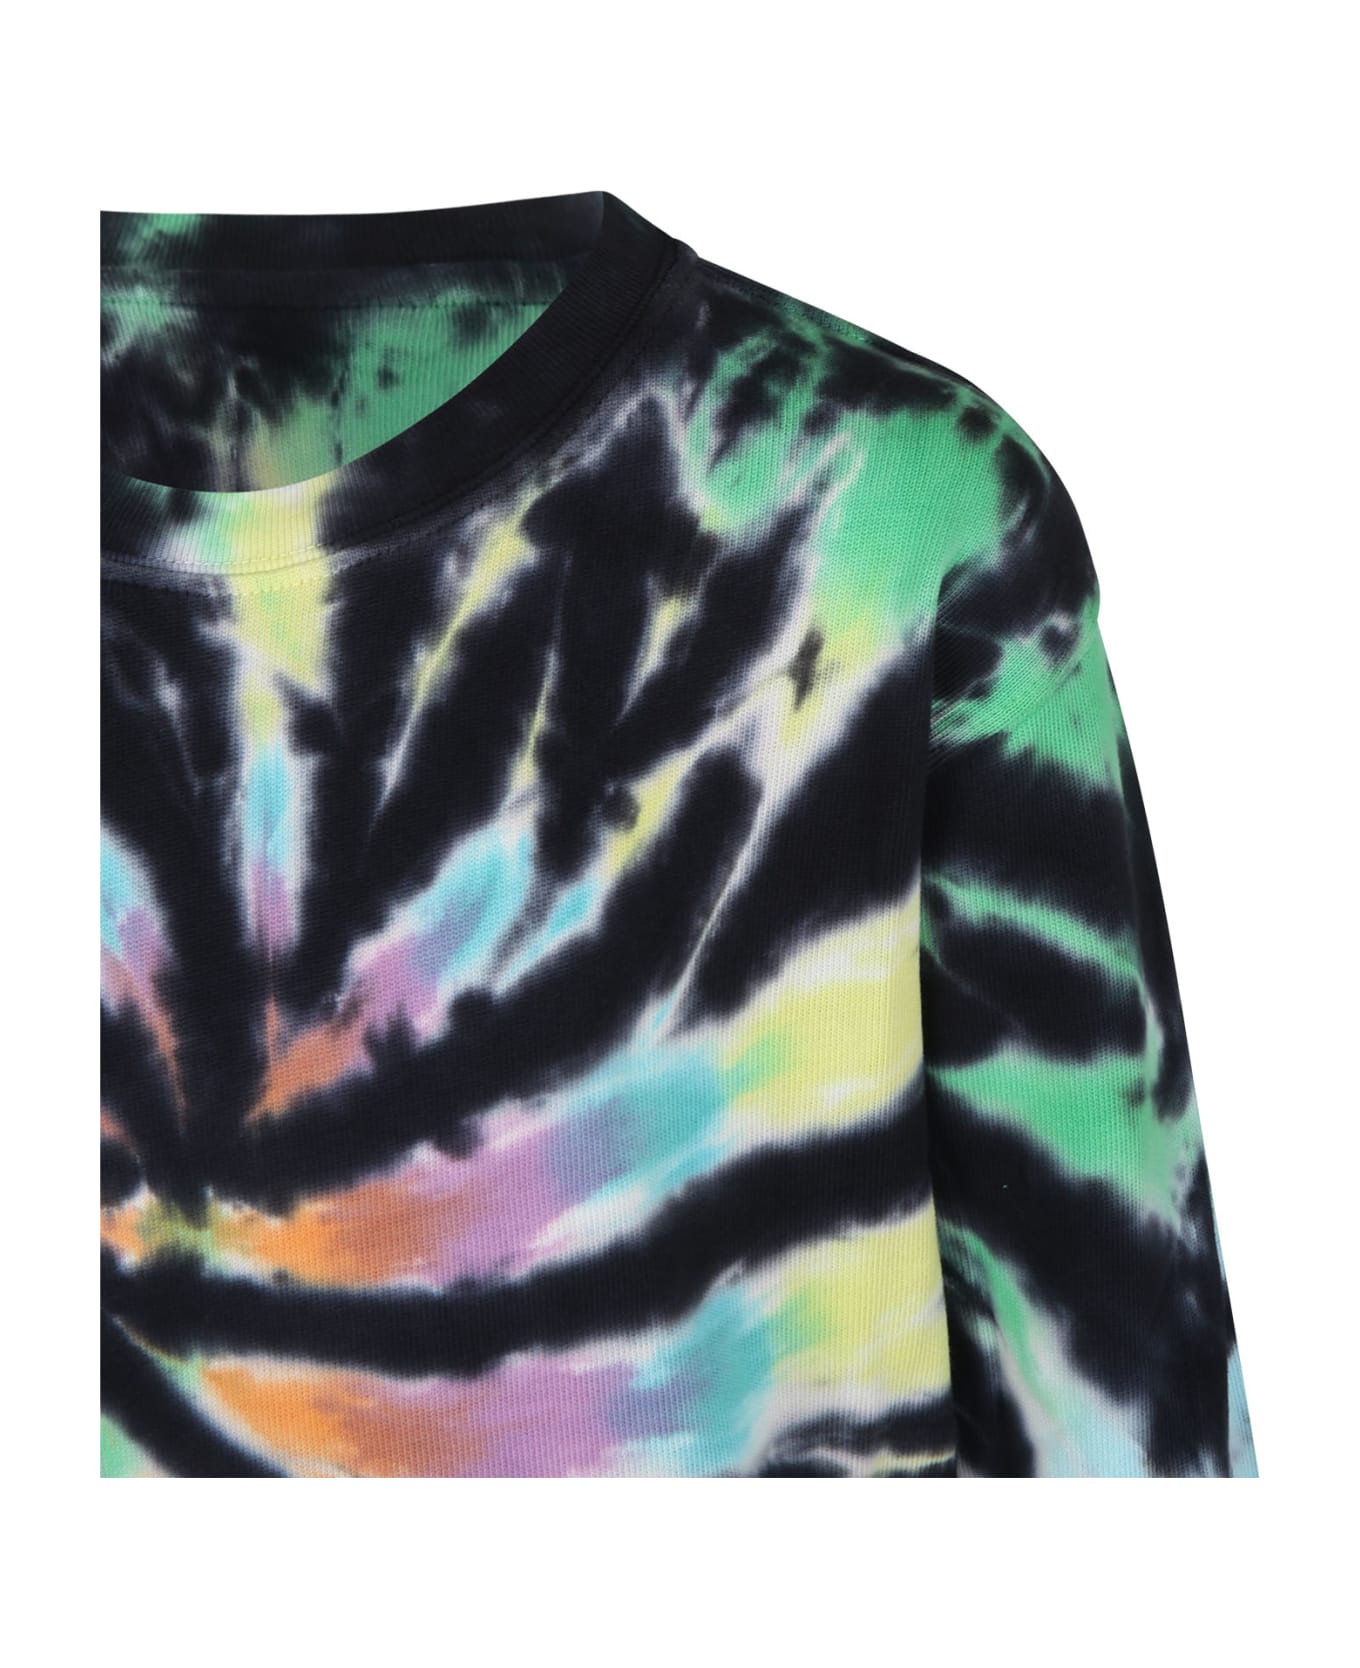 Molo Black Sweatshirt For Boy With Tie-dye Print - Multicolor